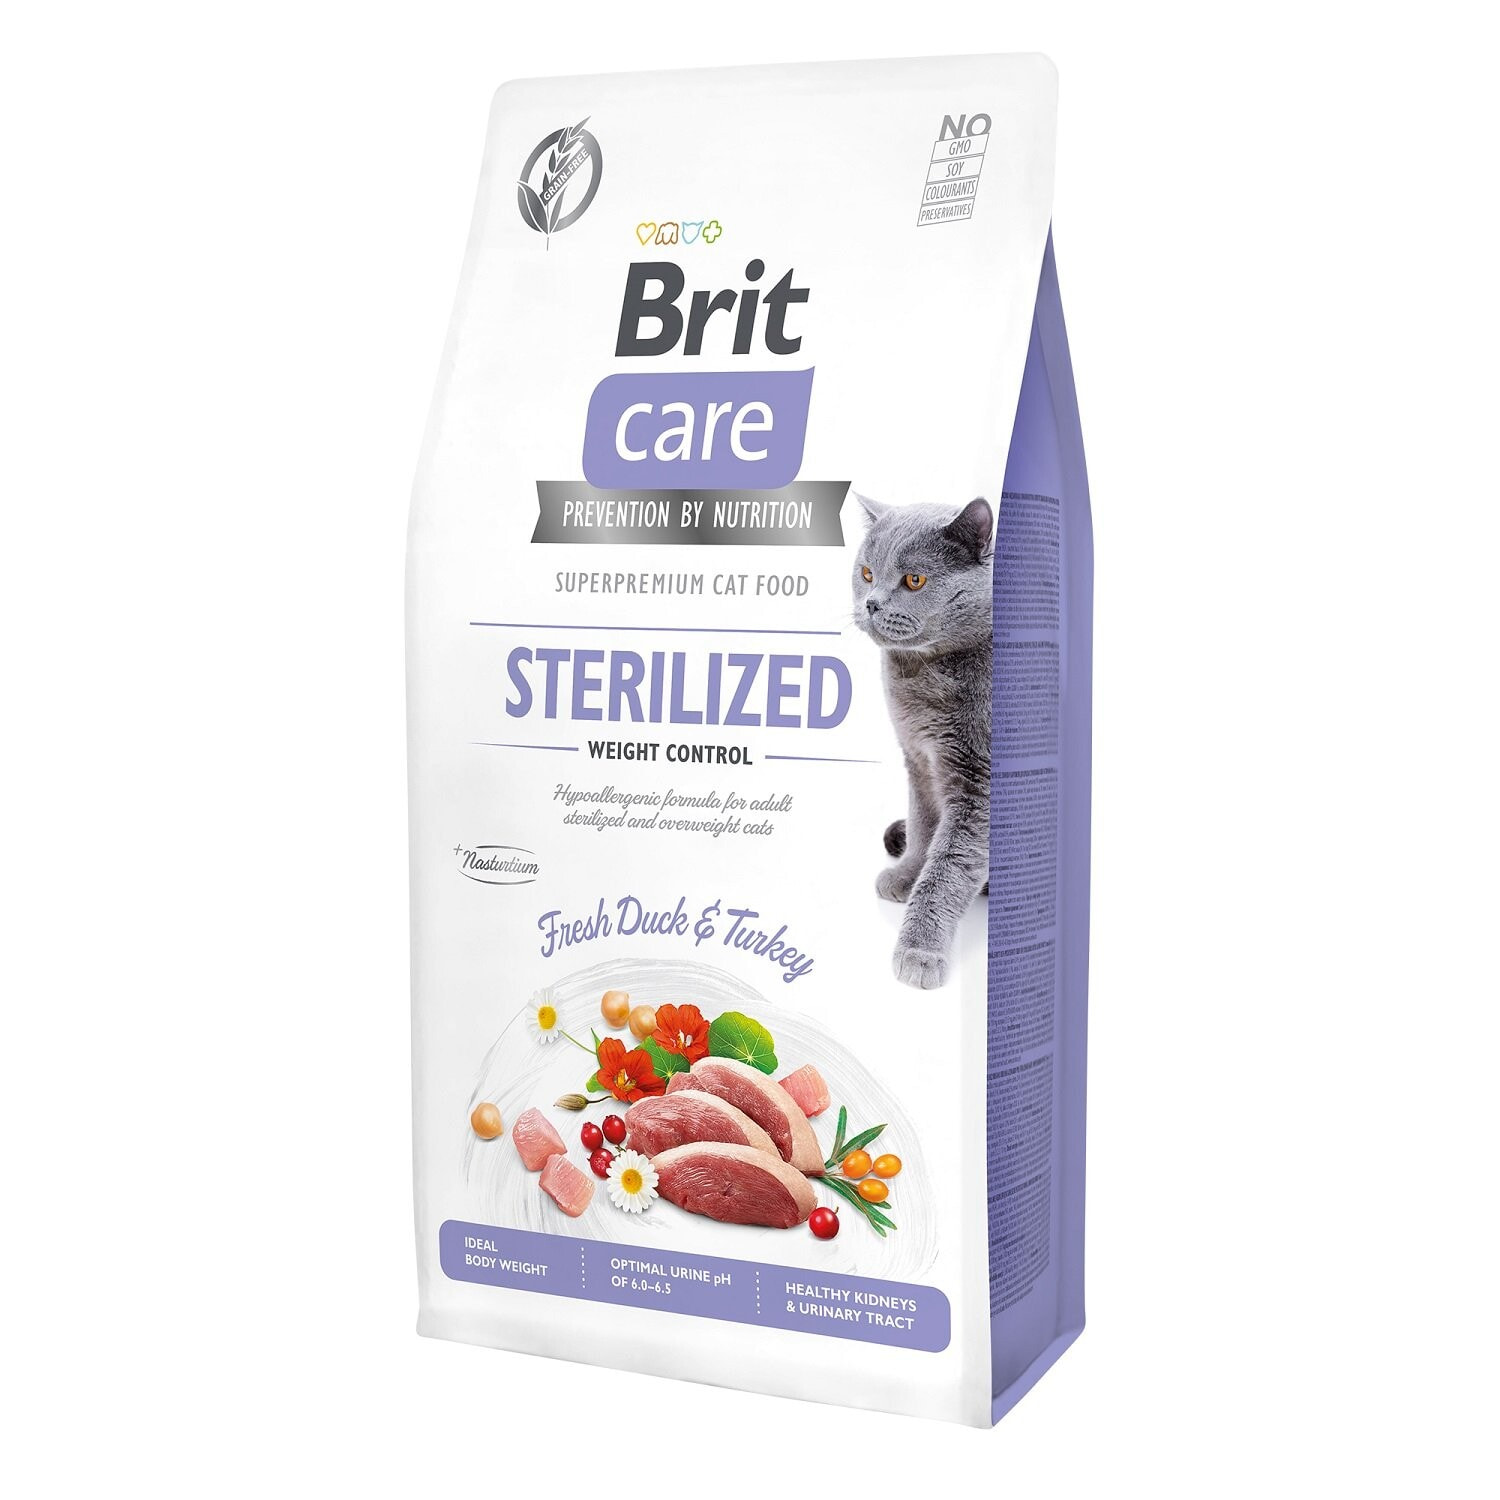 Сухой корм для кошек VAFO PRAHS, Brit Care, для стерилизованных, с уткой